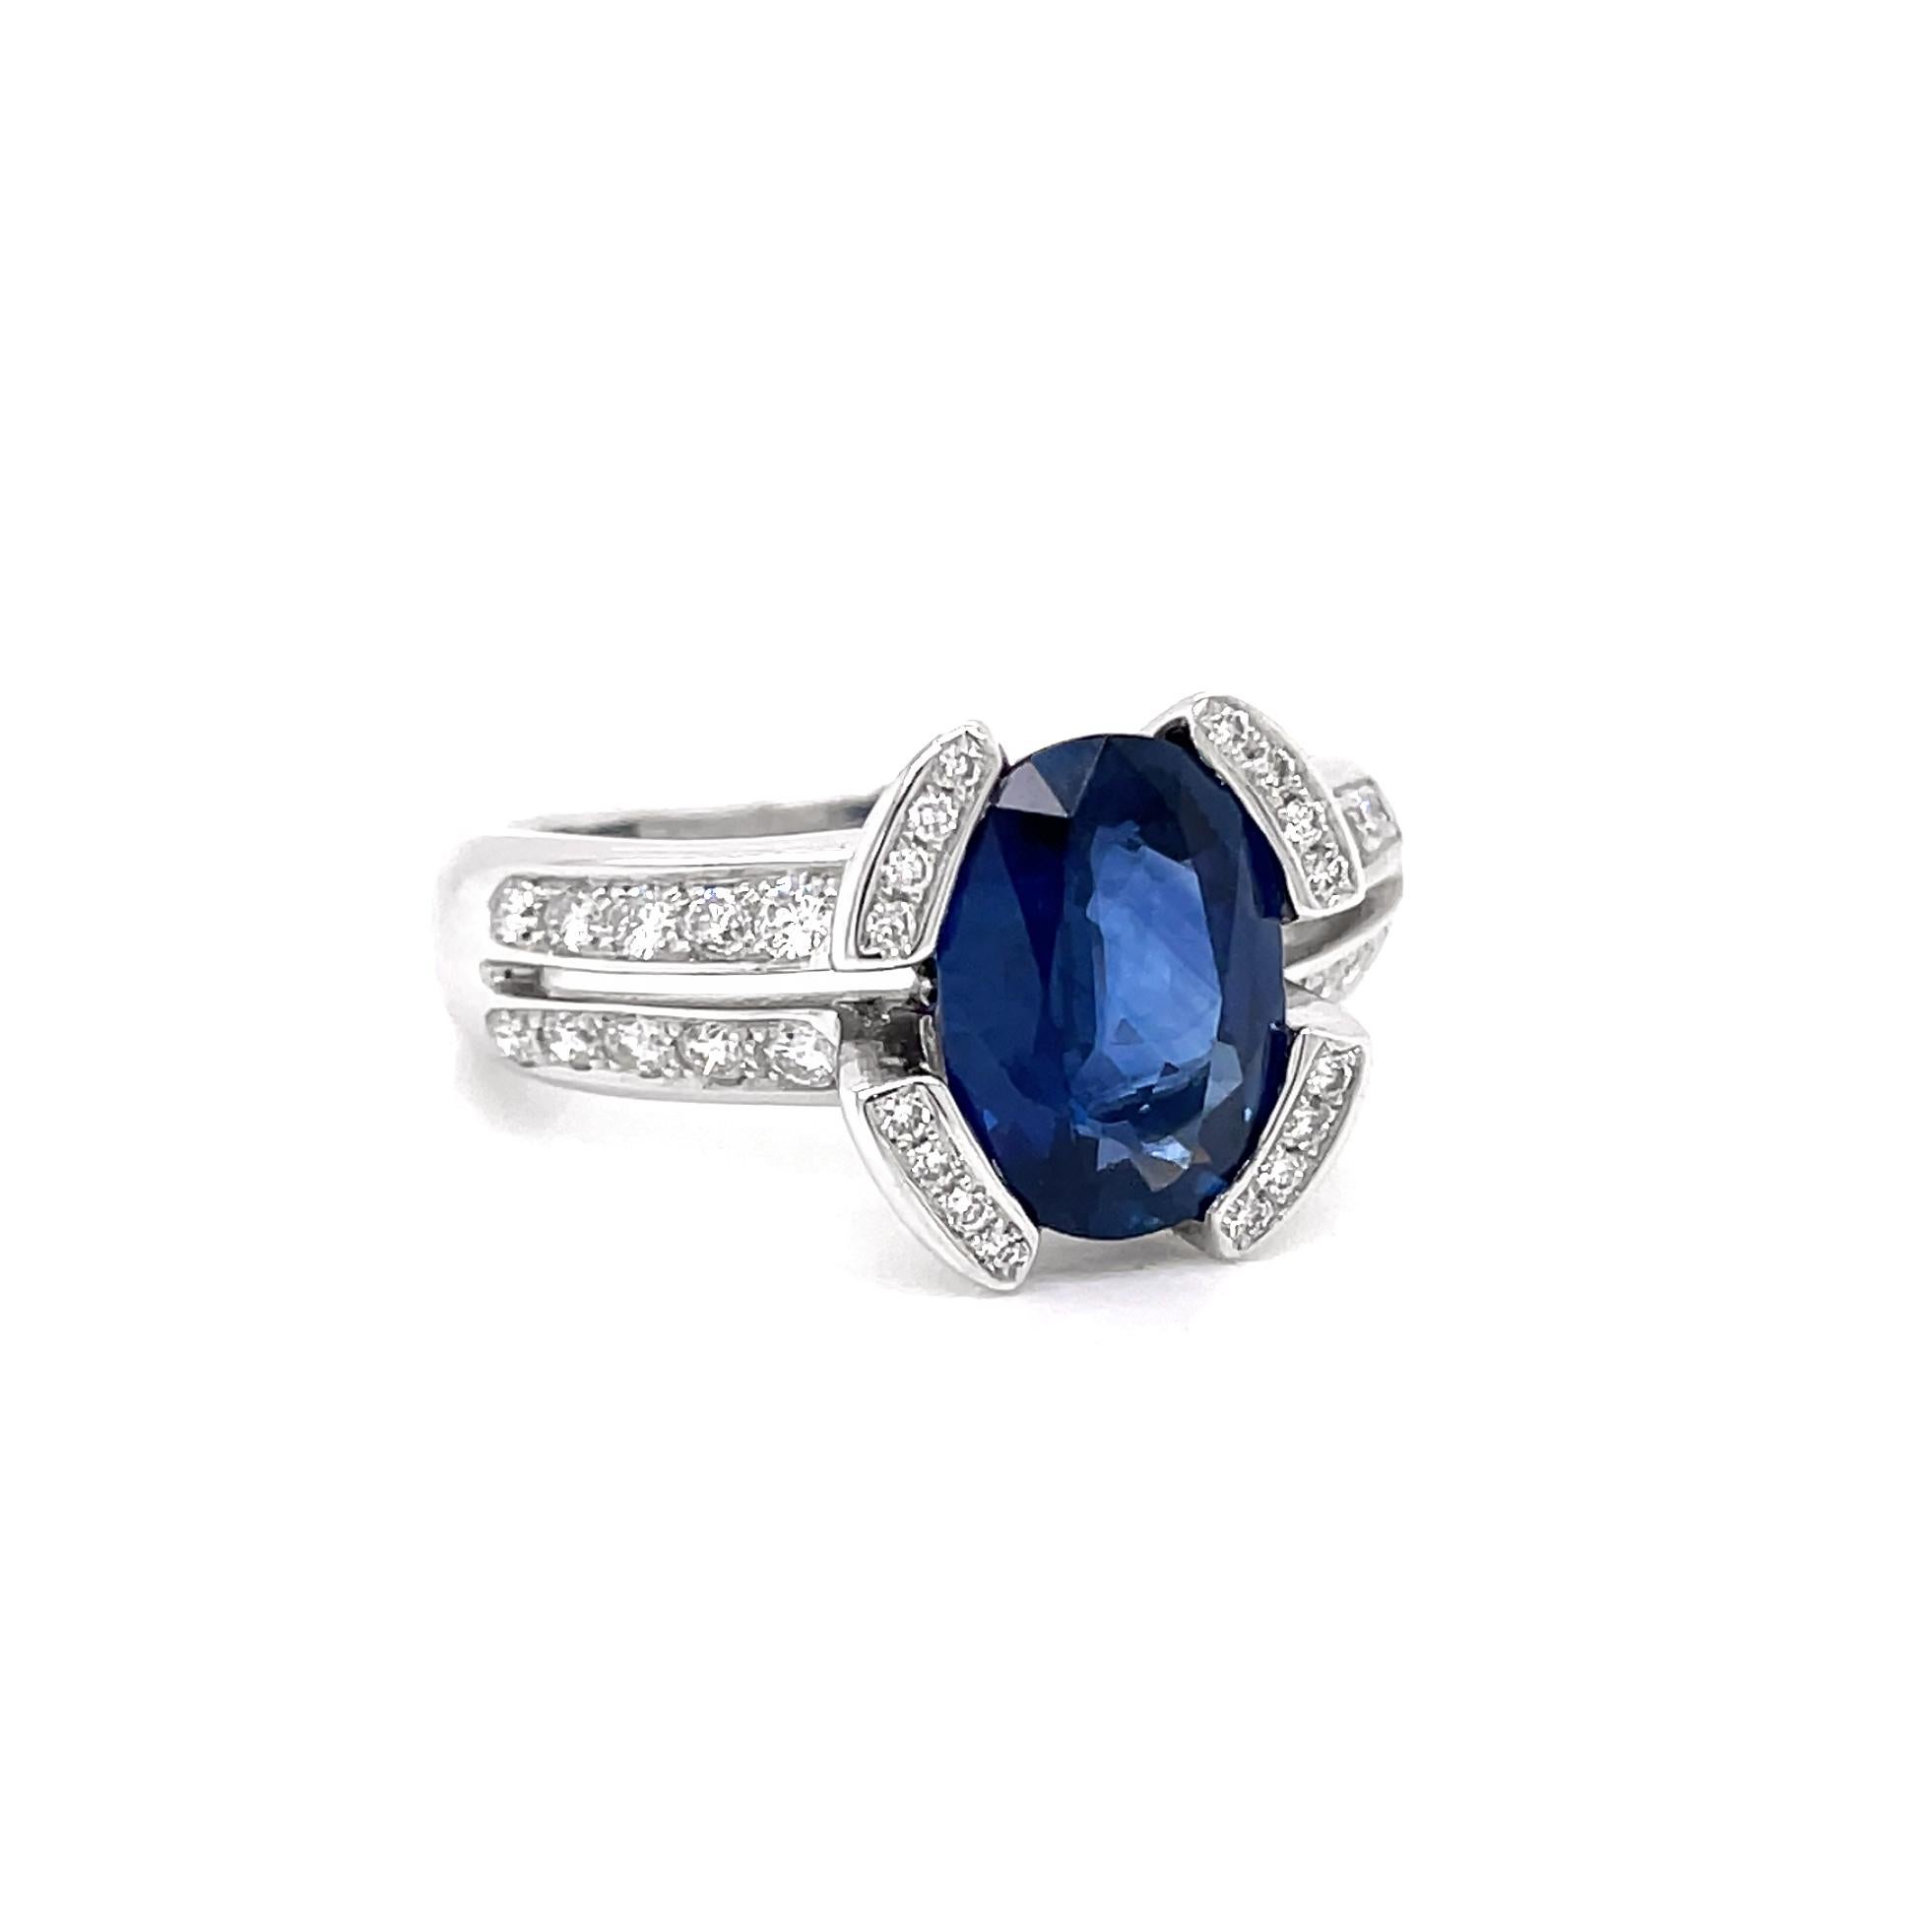 Dieser wunderschöne Ring ist mit einem ovalen 2,75-karätigen königsblauen Saphir in einer Semi-Rub-Over-Fassung und einem geteilten Schulterschaft ausgestattet. Die Spannzange ist in vier Abschnitte unterteilt, die jeweils mit vier runden Brillanten